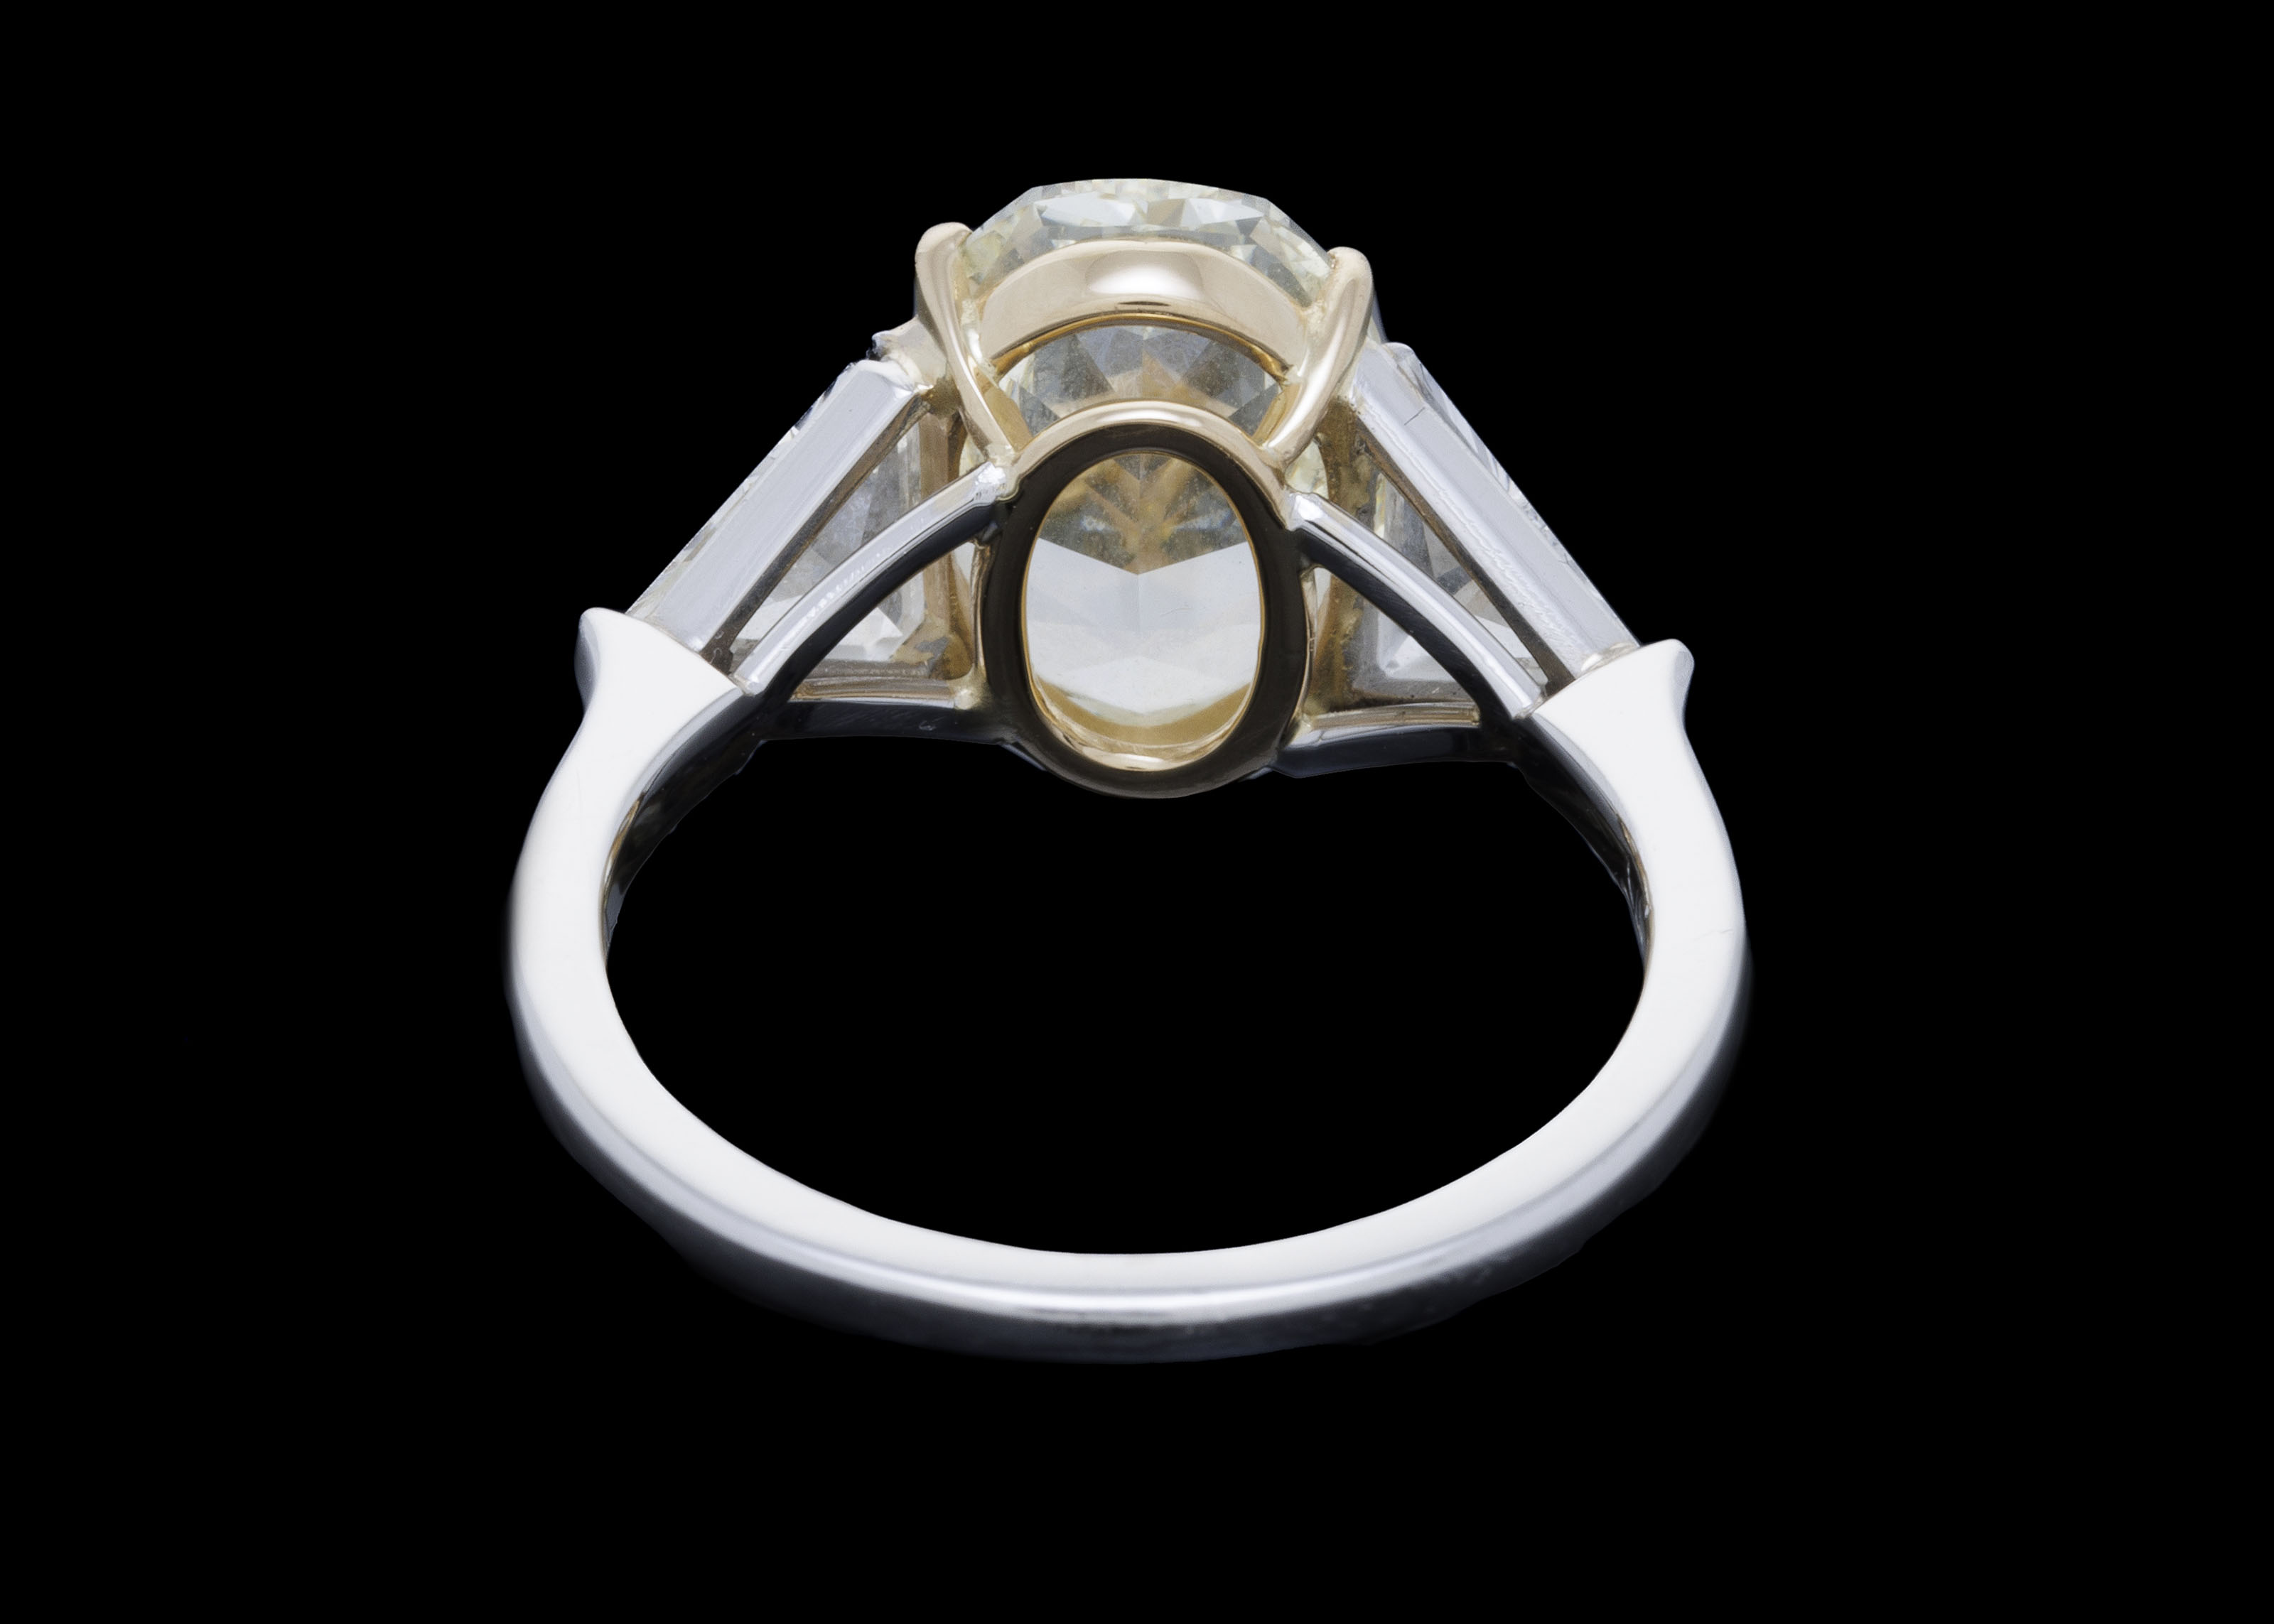 Bague platine et or 750 sertie d'un diamants taille ovale de 3.25 carats épaulé de deux diamants tai - Image 3 of 3